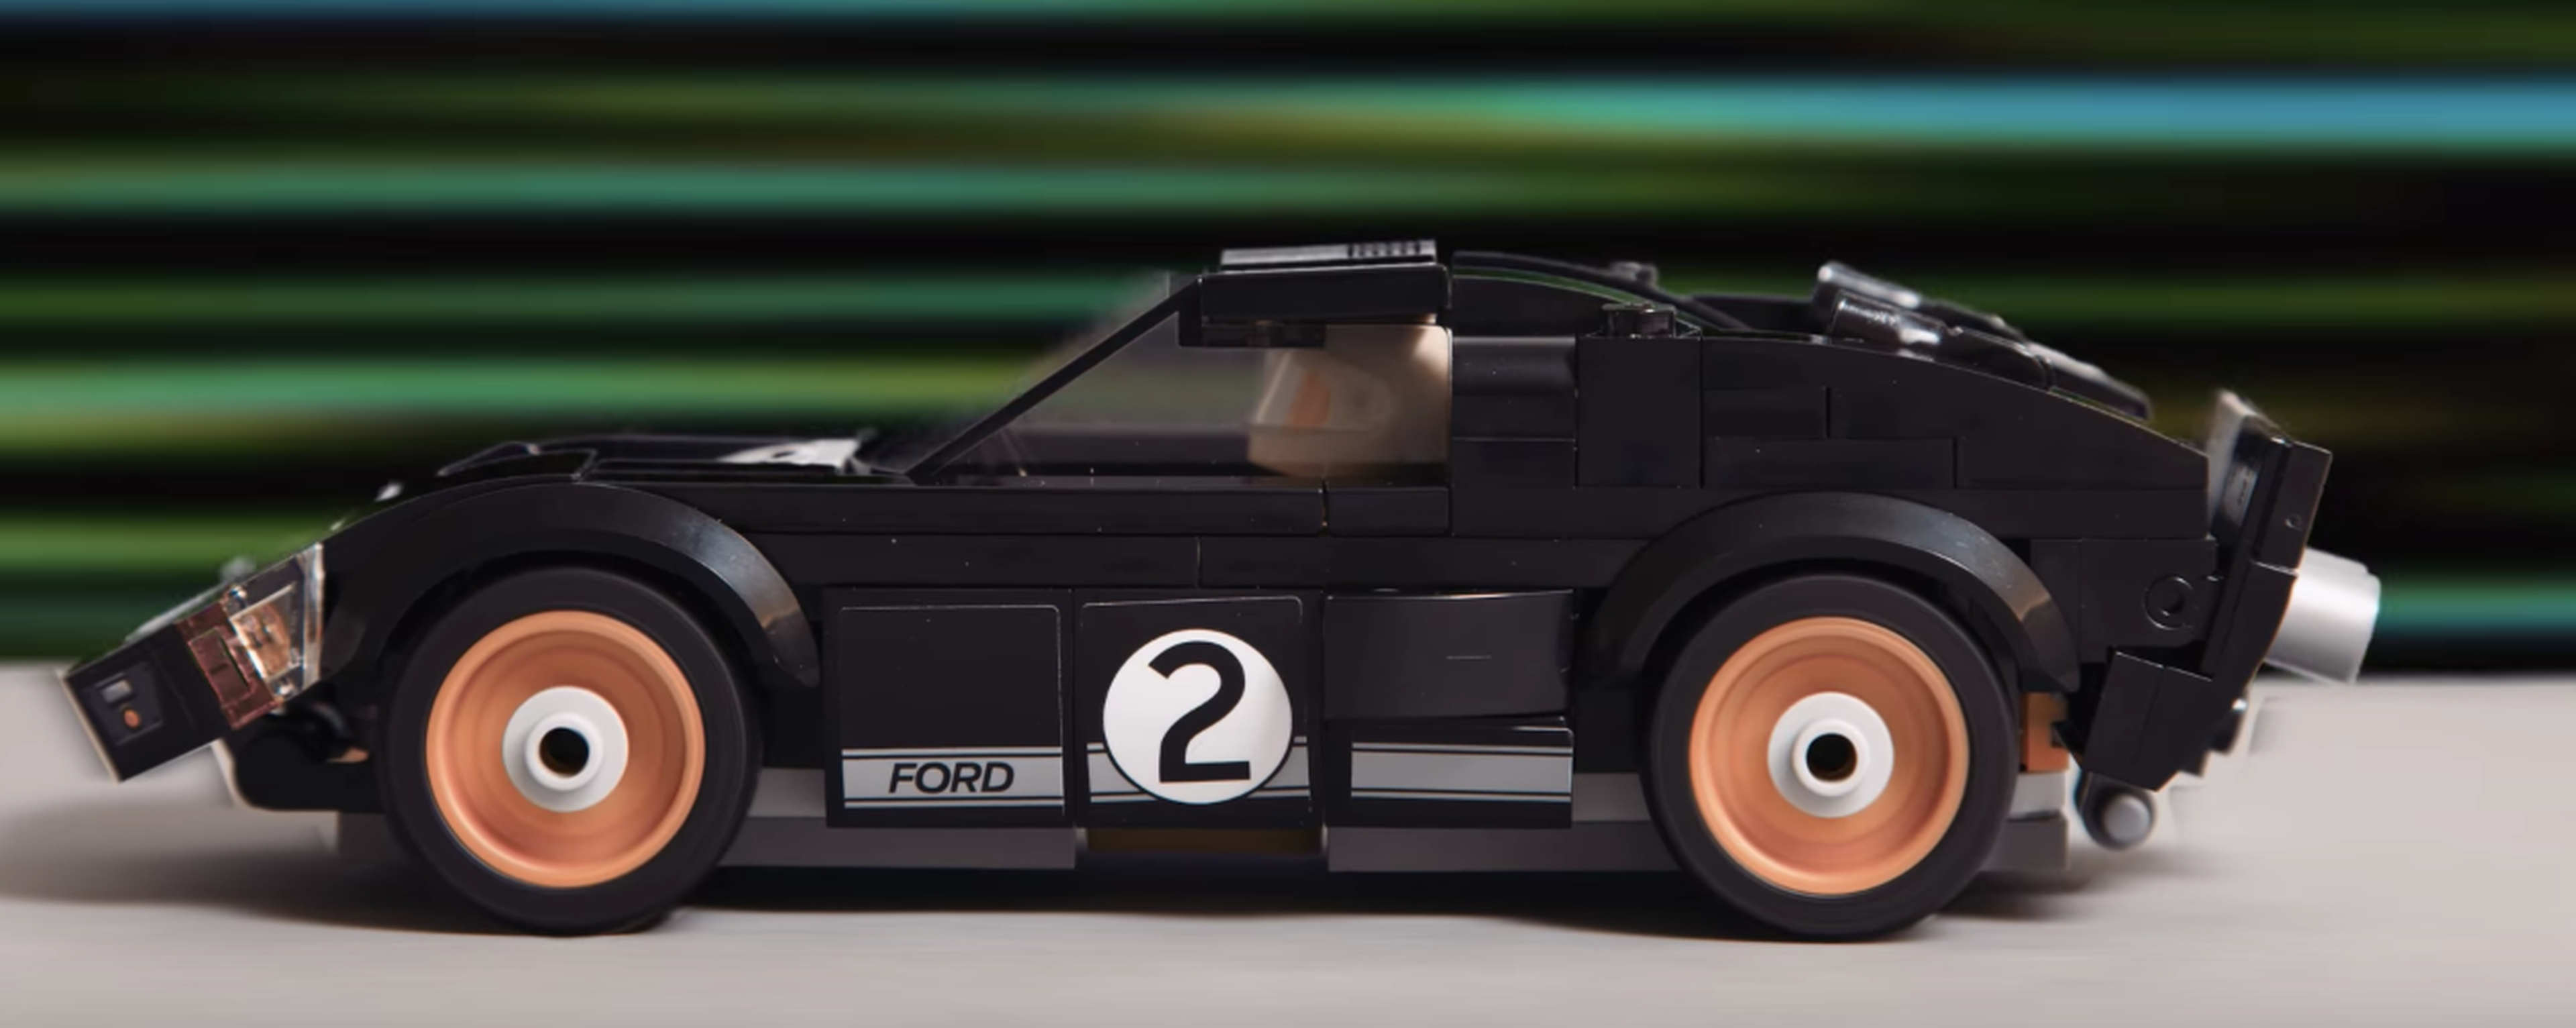 VÍDEO: El nuevo Ford GT y el GT40 al alcance de tu bolsillo